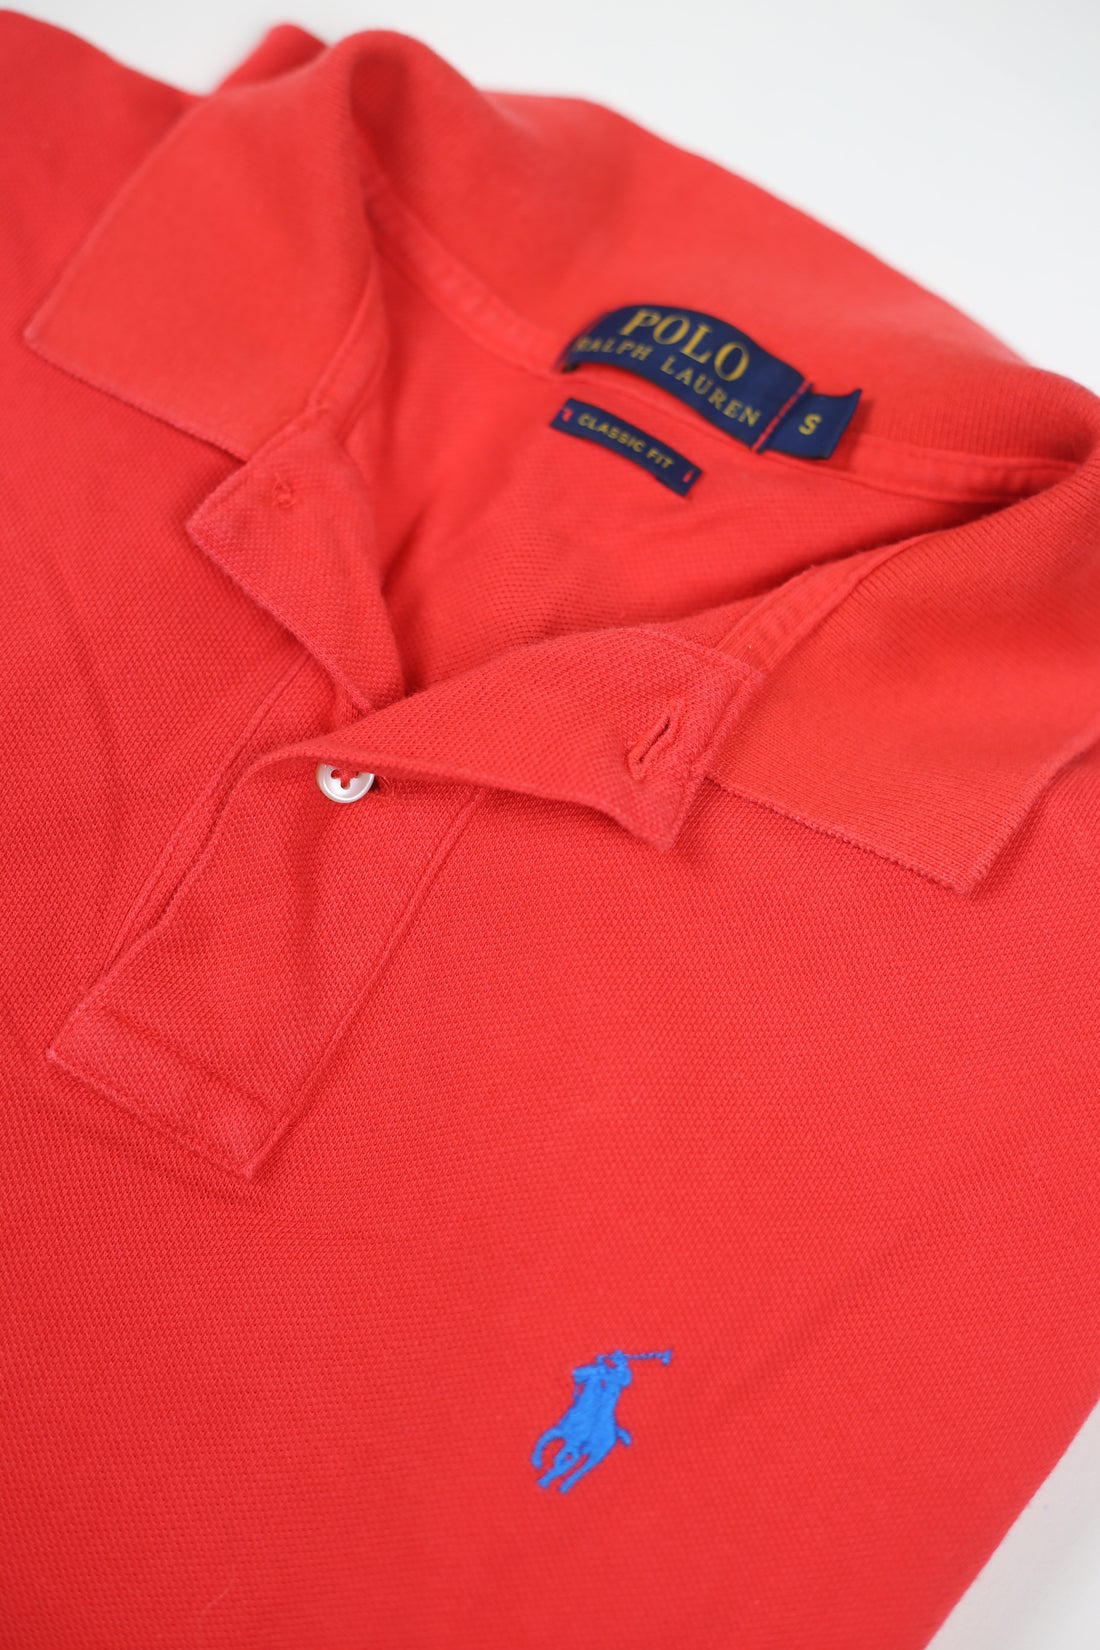 Vintage polo shirt RL - S -